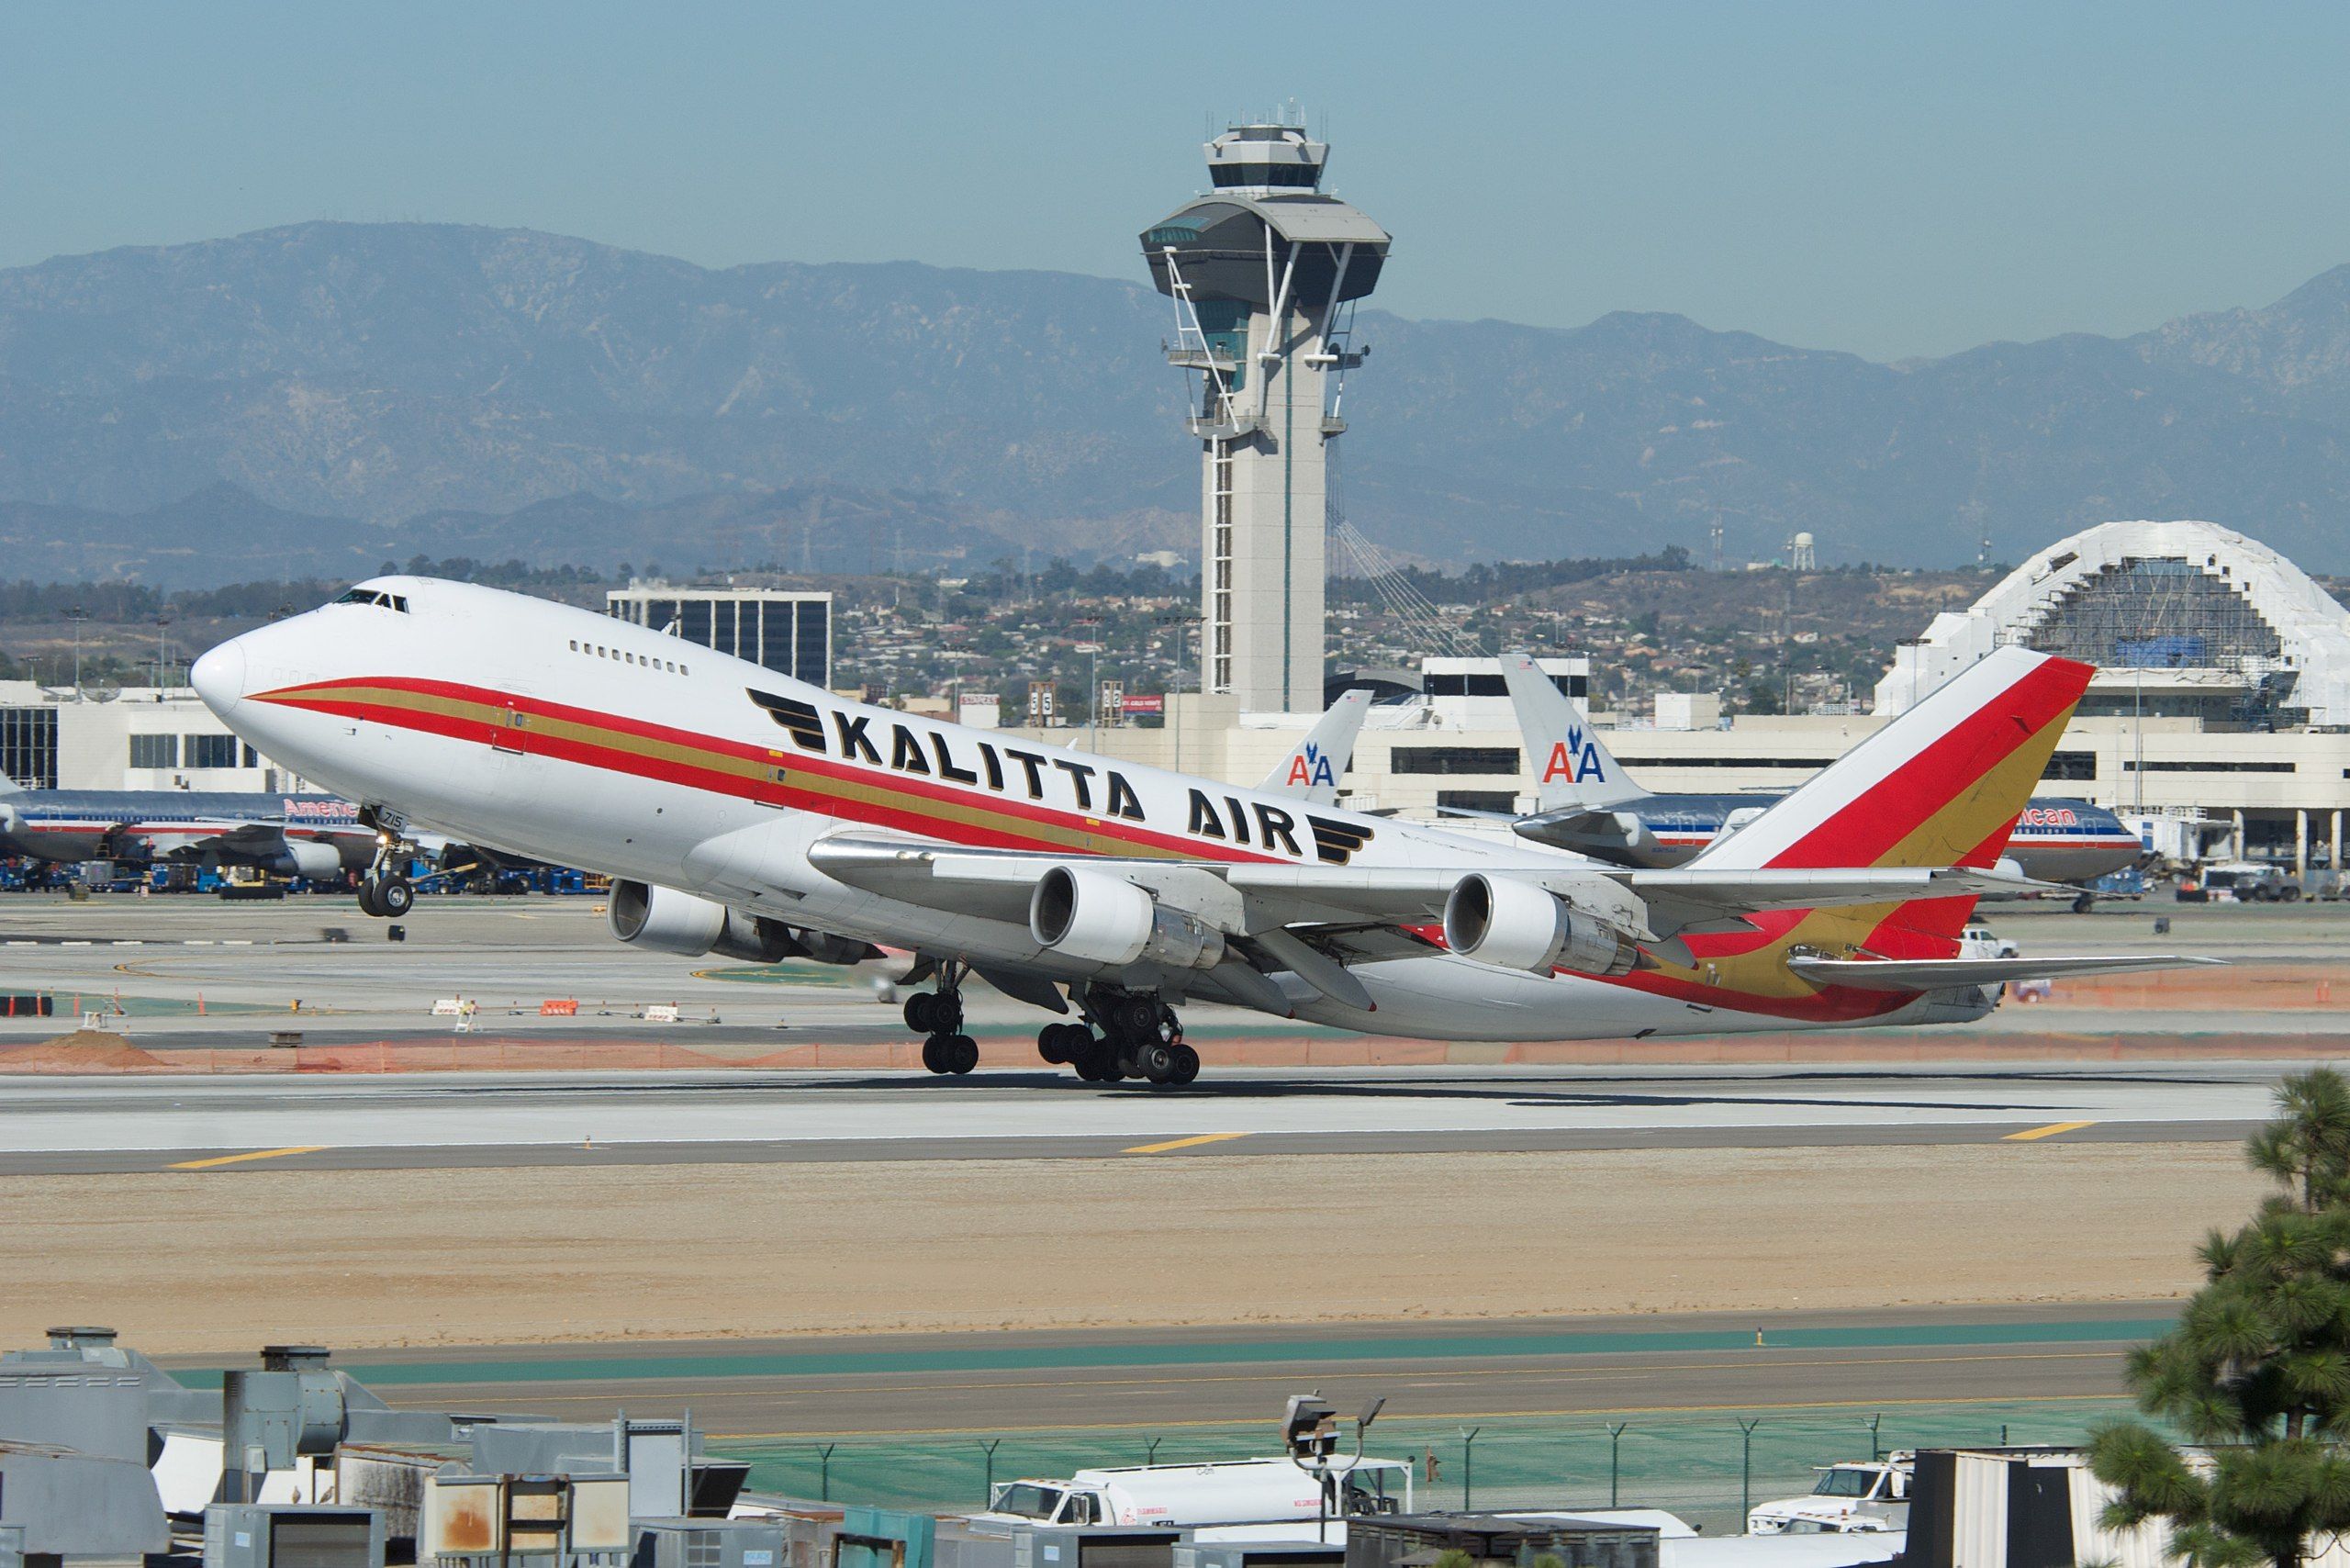 Kalitta Air Boeing 747-200